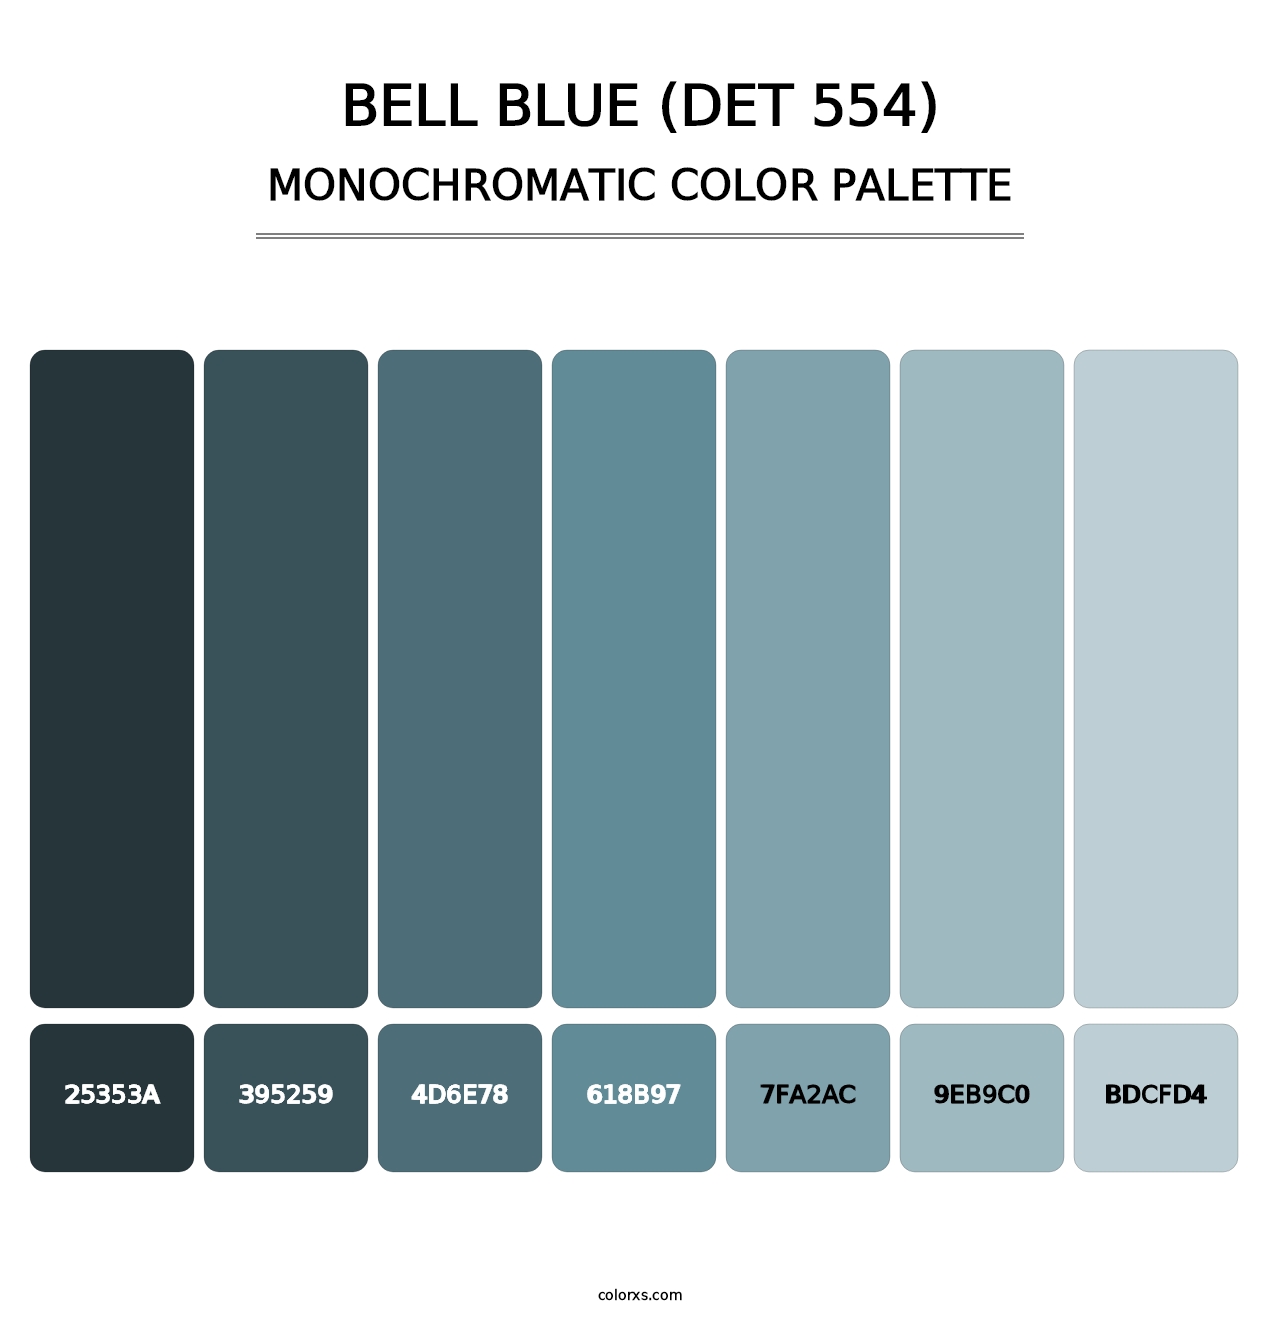 Bell Blue (DET 554) - Monochromatic Color Palette